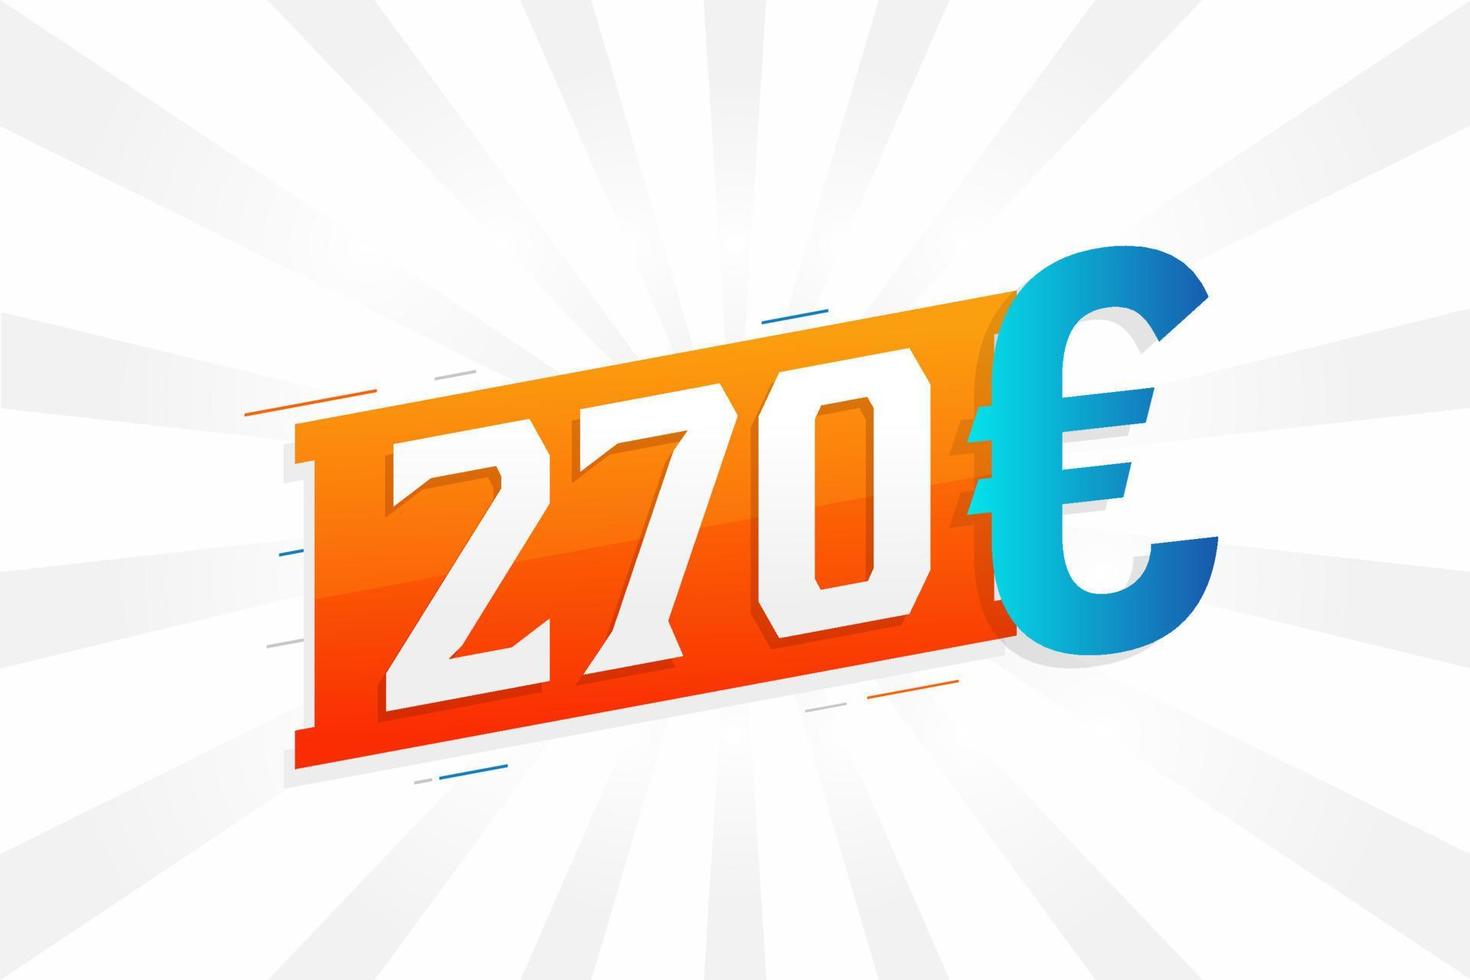 270-Euro-Währungsvektor-Textsymbol. 270 Euro Geldvorratvektor der Europäischen Union vektor